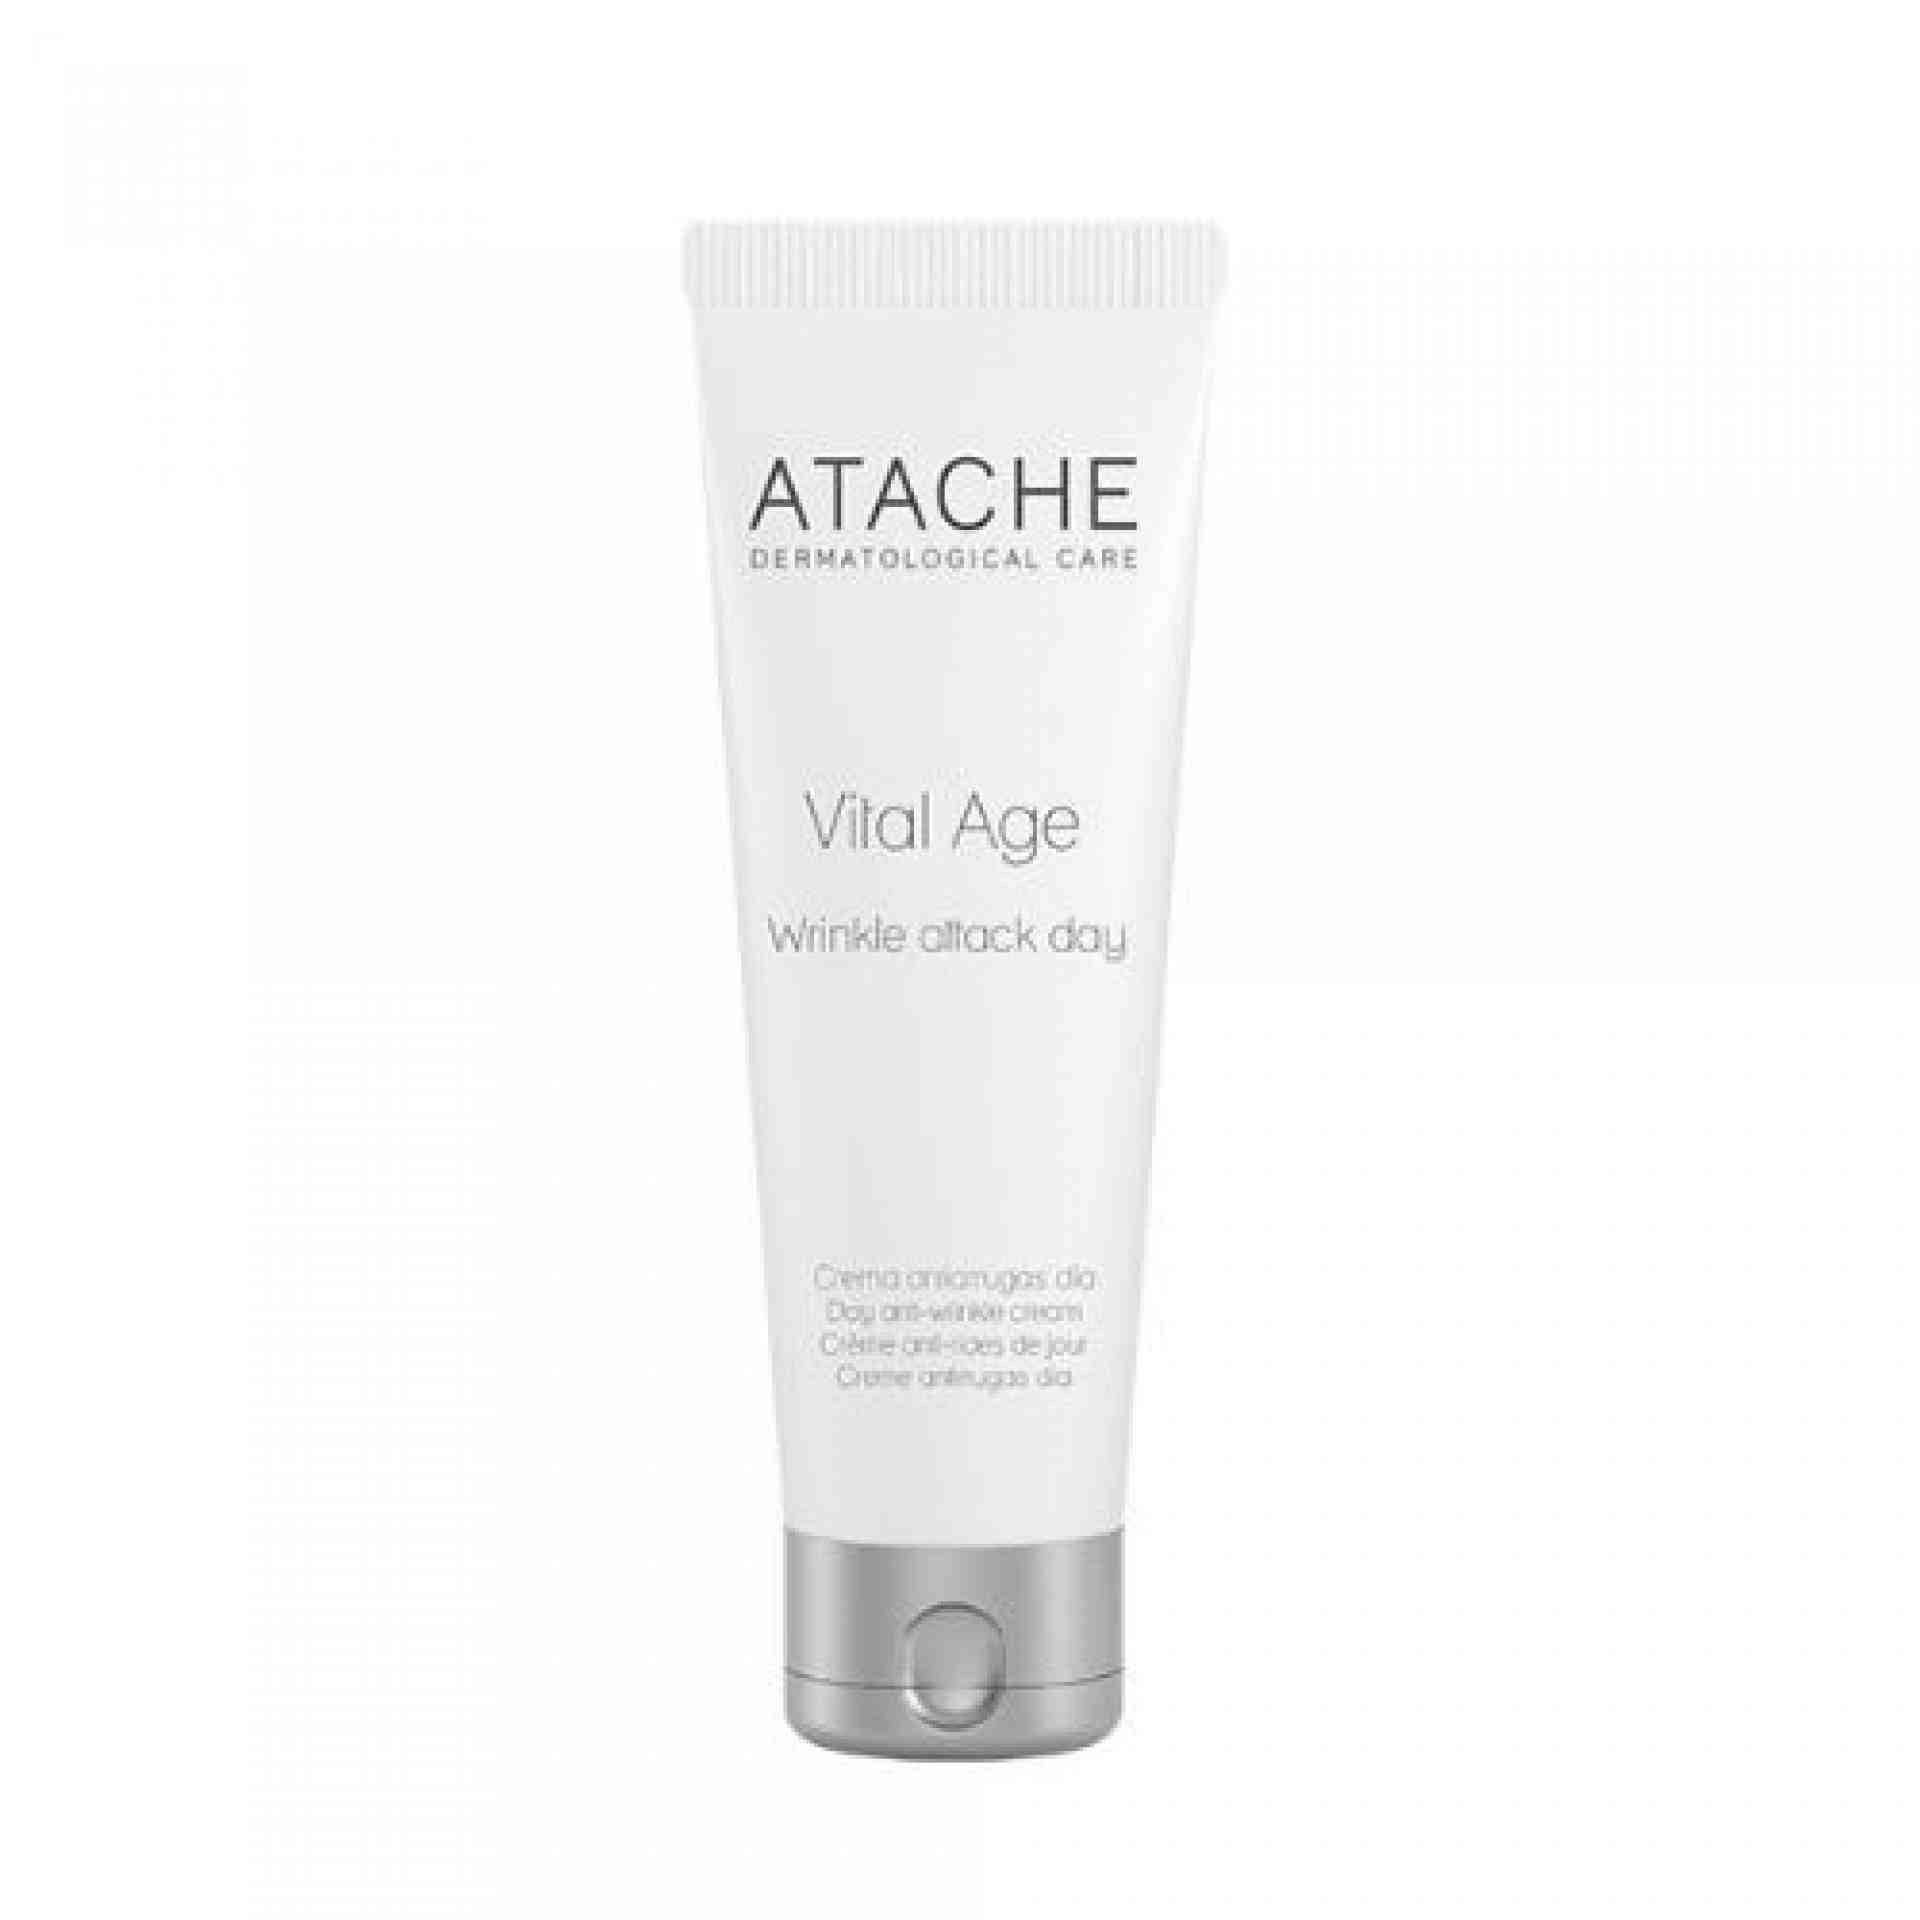 Wrinkle attack day | Crema anti-edad de día 50ml - Vital Age - Atache ®